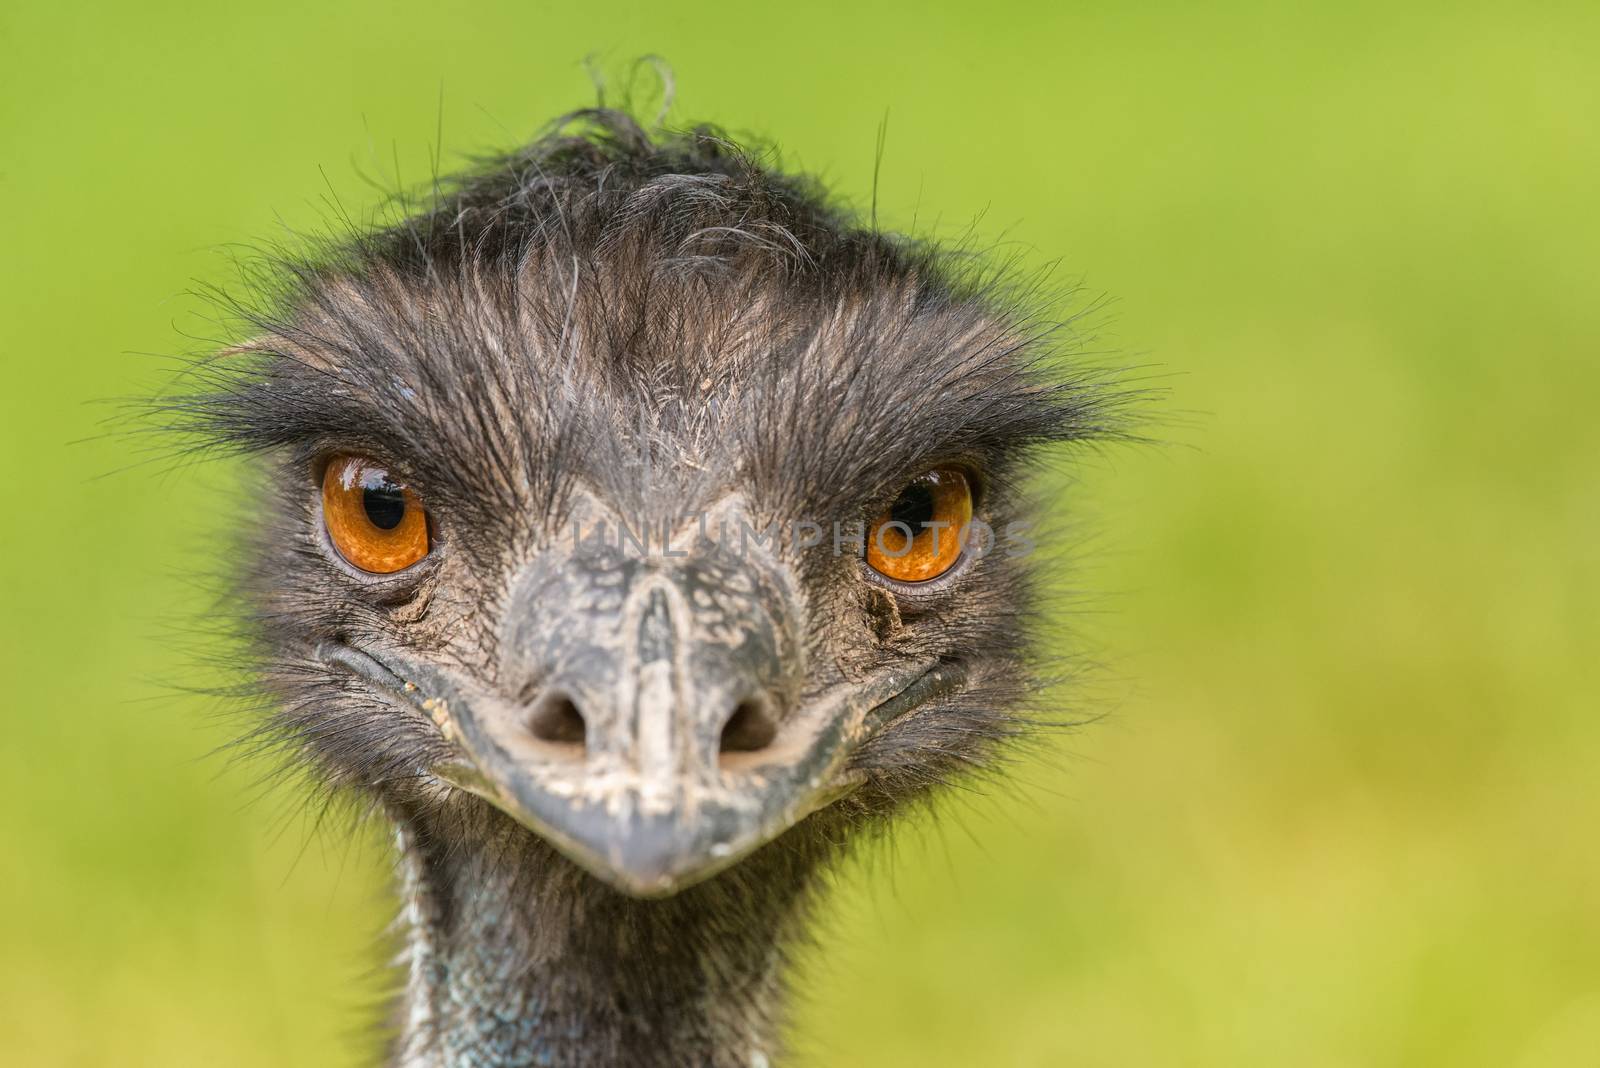 Portrait of Australian Emu by nickfox